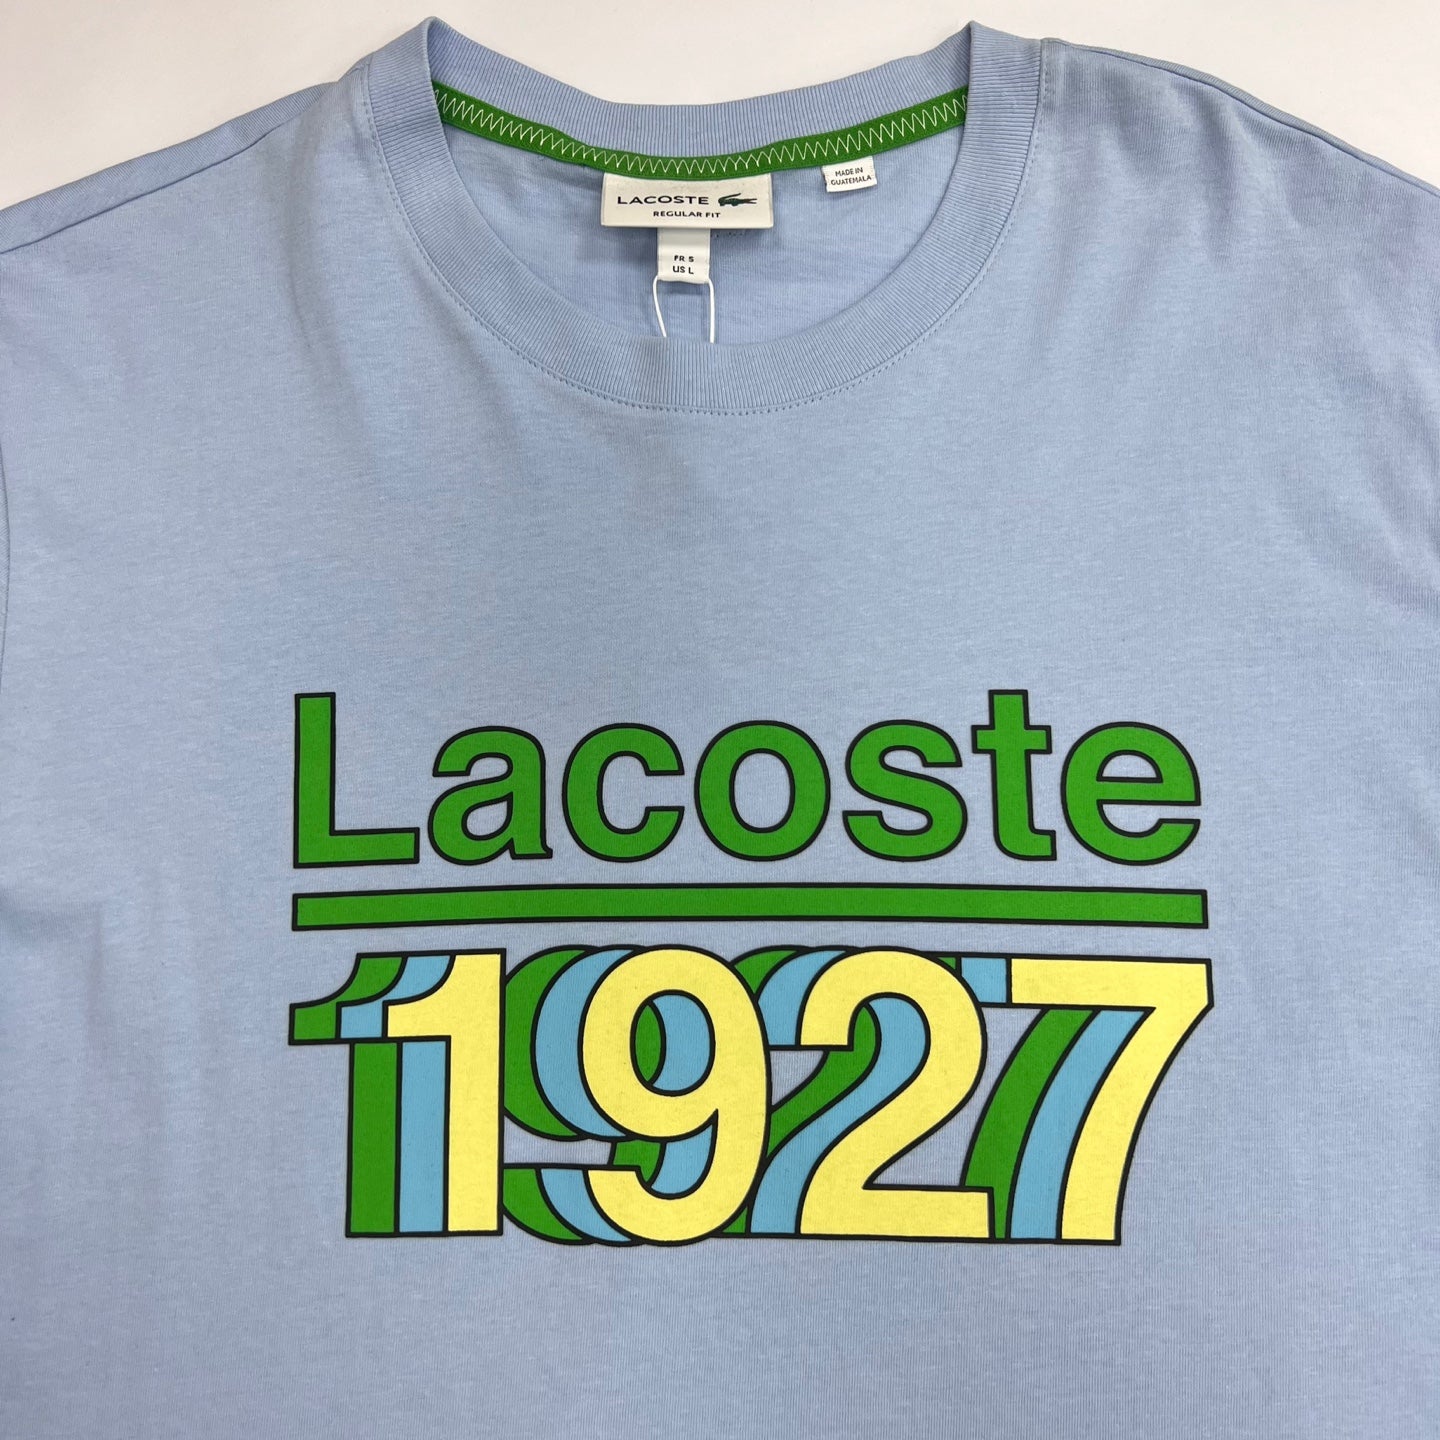 LACOSTE Vintage Graphic T-Shirt